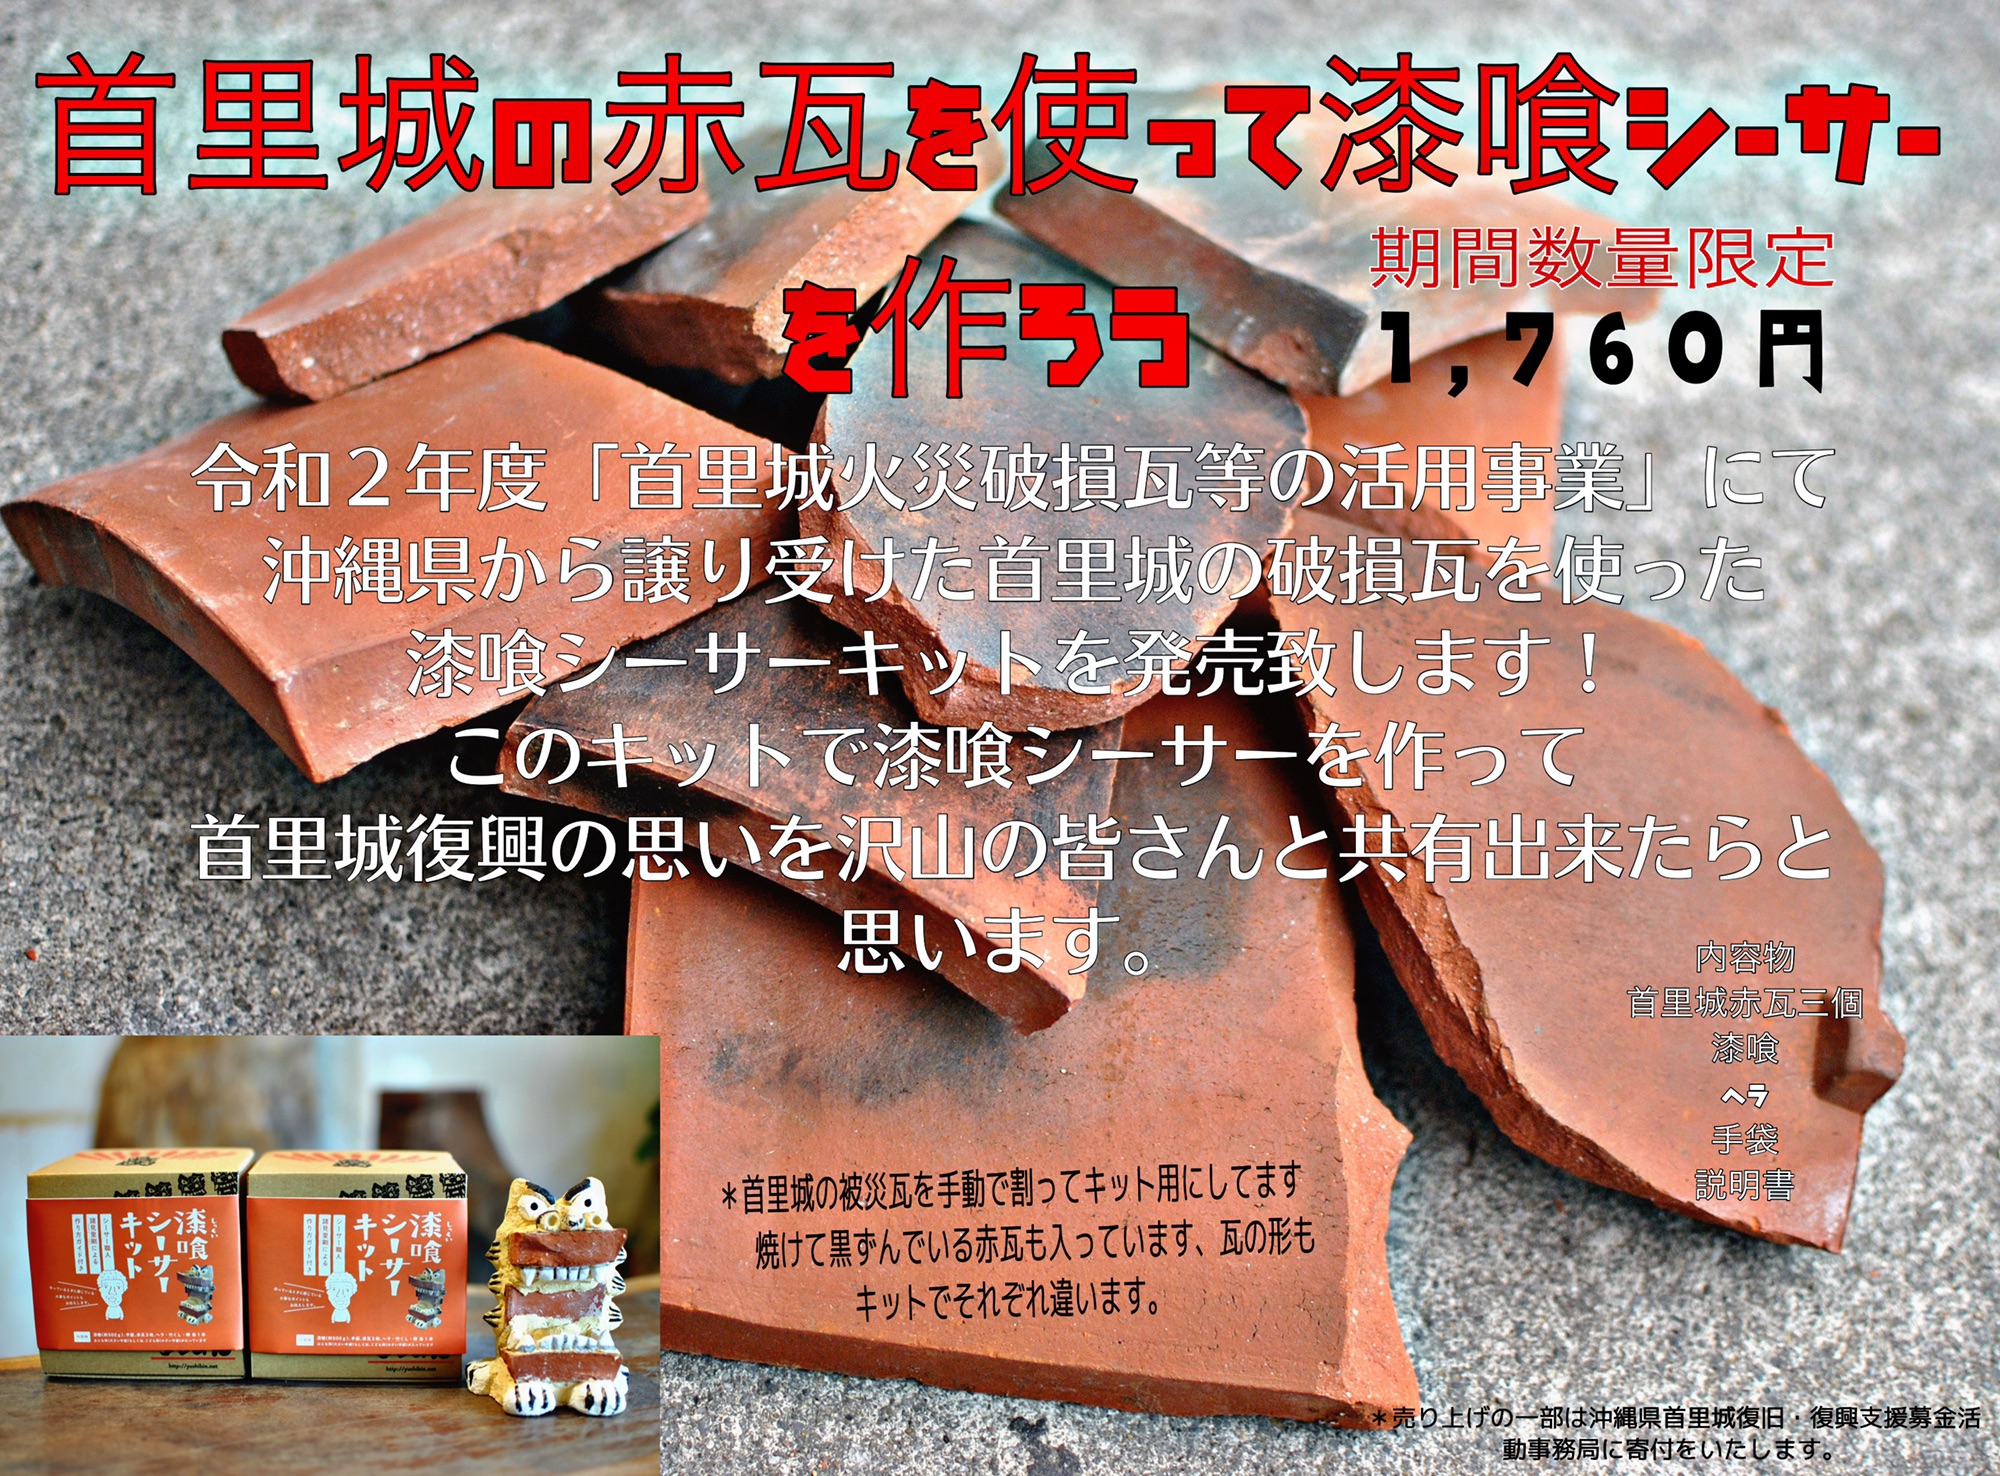 首里城の破損赤瓦を使った 漆喰シーサーキット の発売3月頃に予定です 漆喰シーサー工房 ぎゃらりーゆしびん Shisa Gallery Yushibin